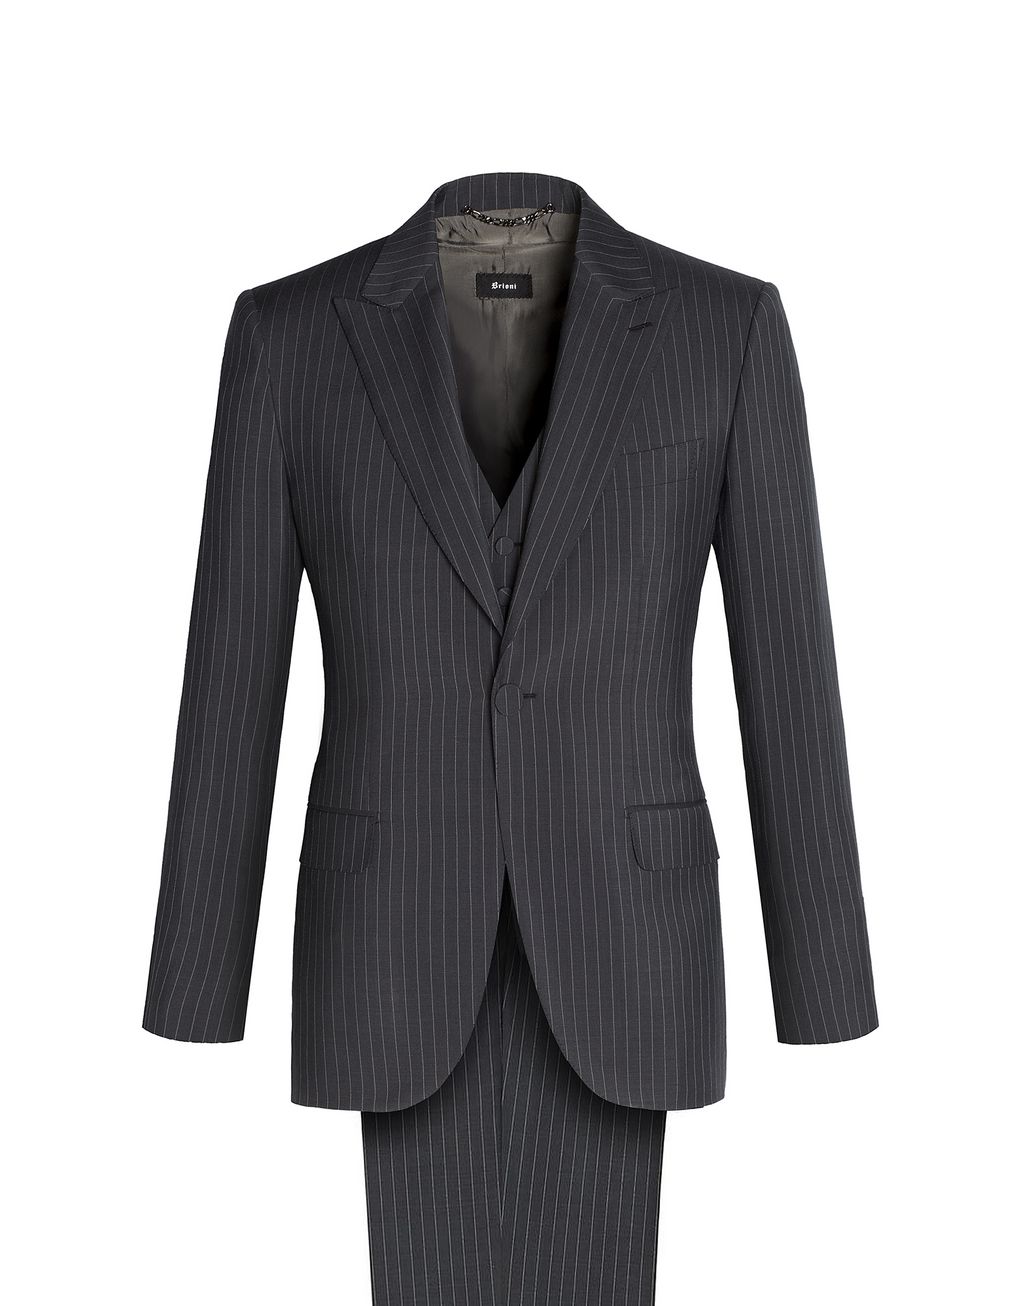 Brioni Men's Suits & Jackets | Brioni Official Online Store